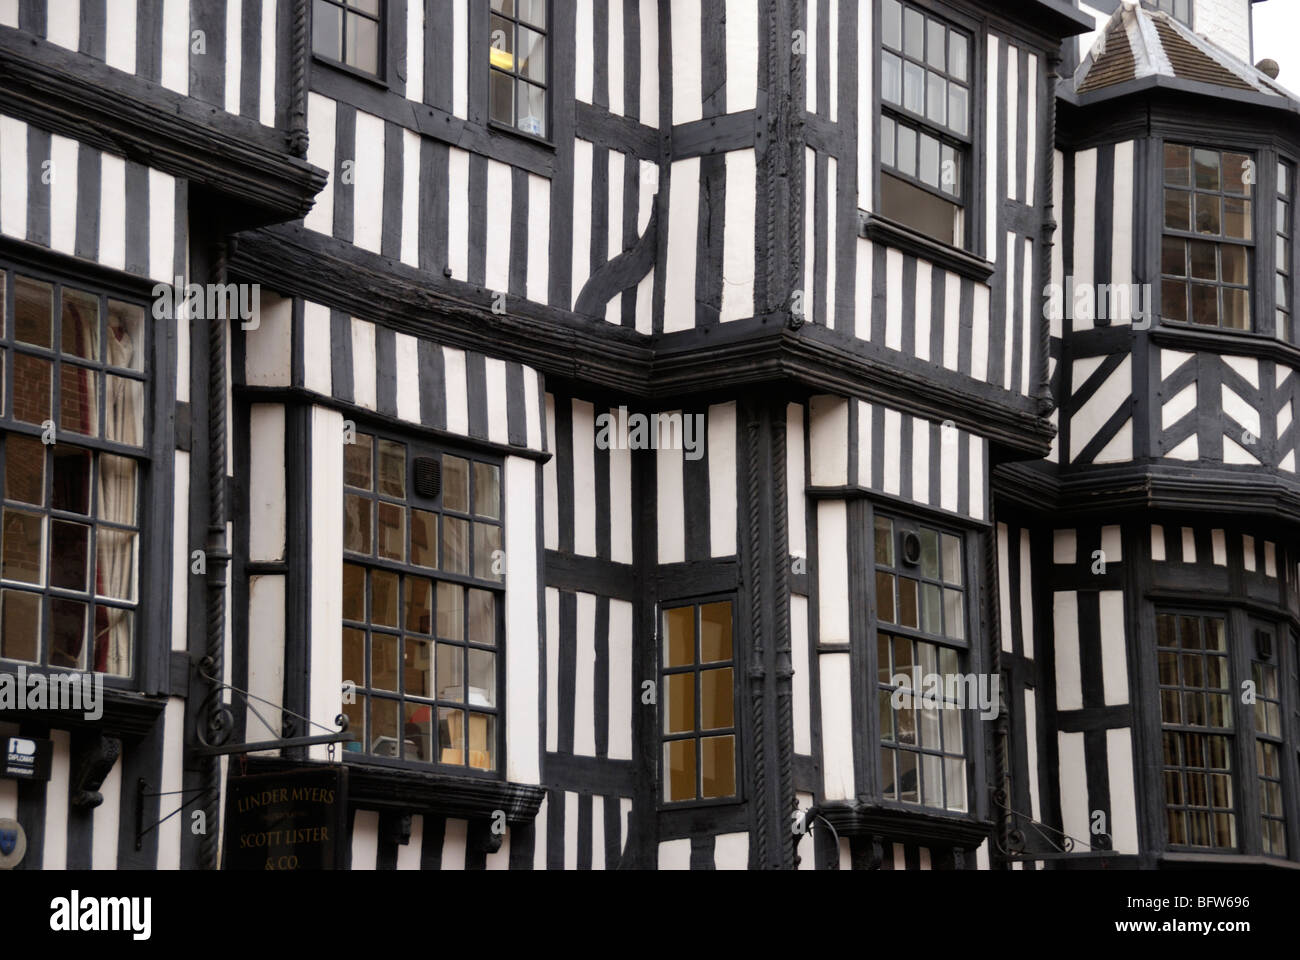 Tudor à colombages la façade de l'immeuble dans la ville de Shrewsbury, Shropshire, England, UK Banque D'Images